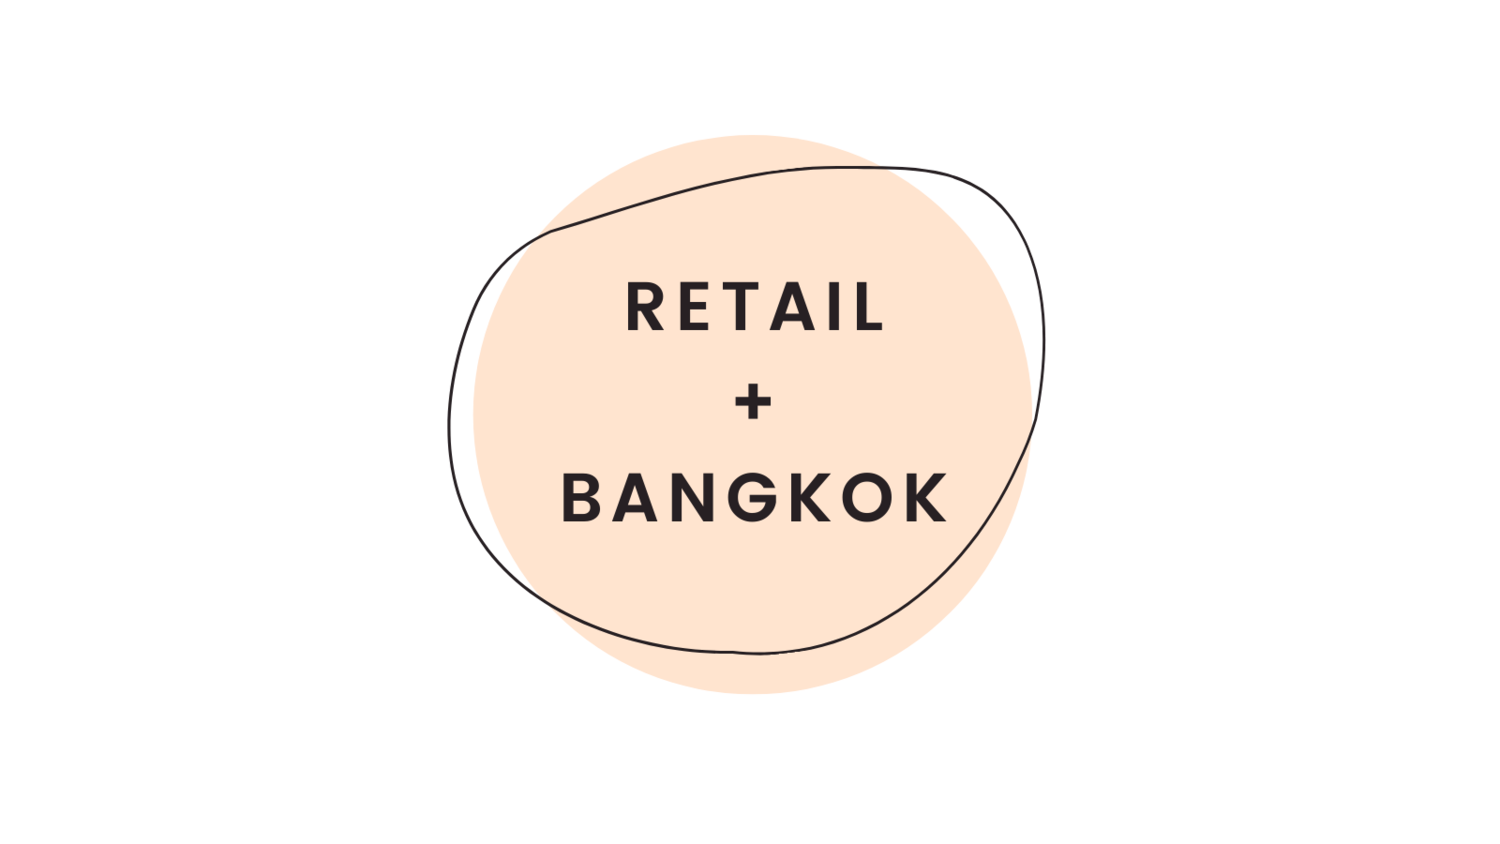 Retail + Bangkok